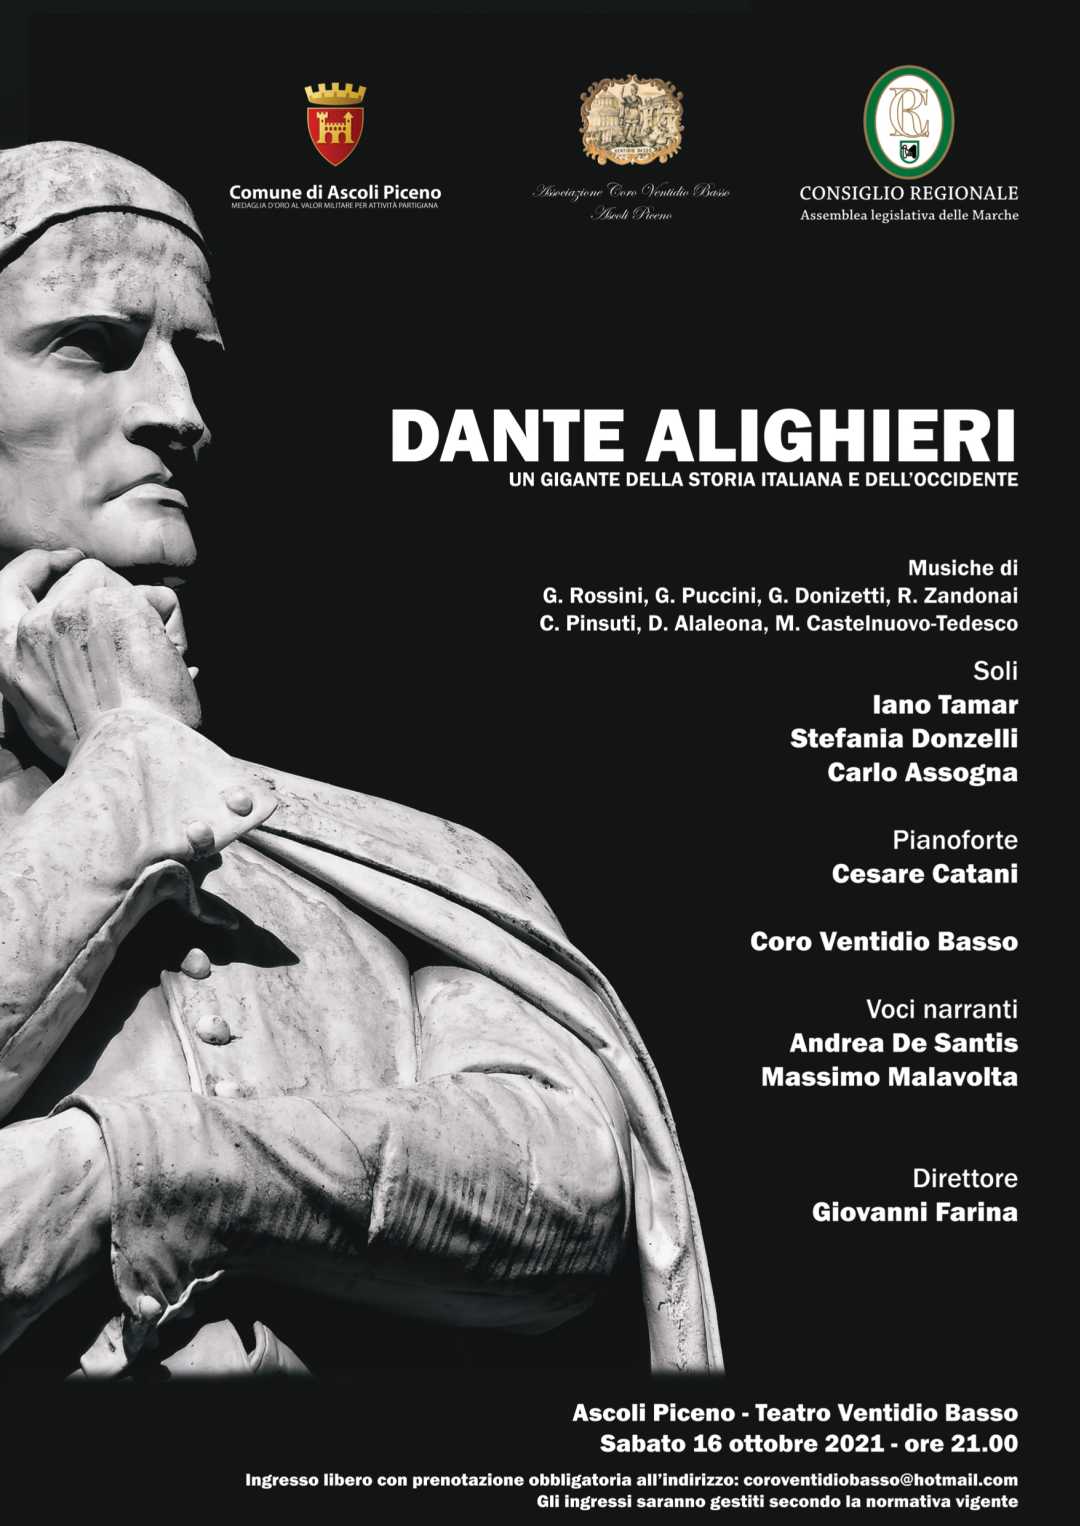 Concerto in occasione del 700° anniversario della morte di Dante Alighieri